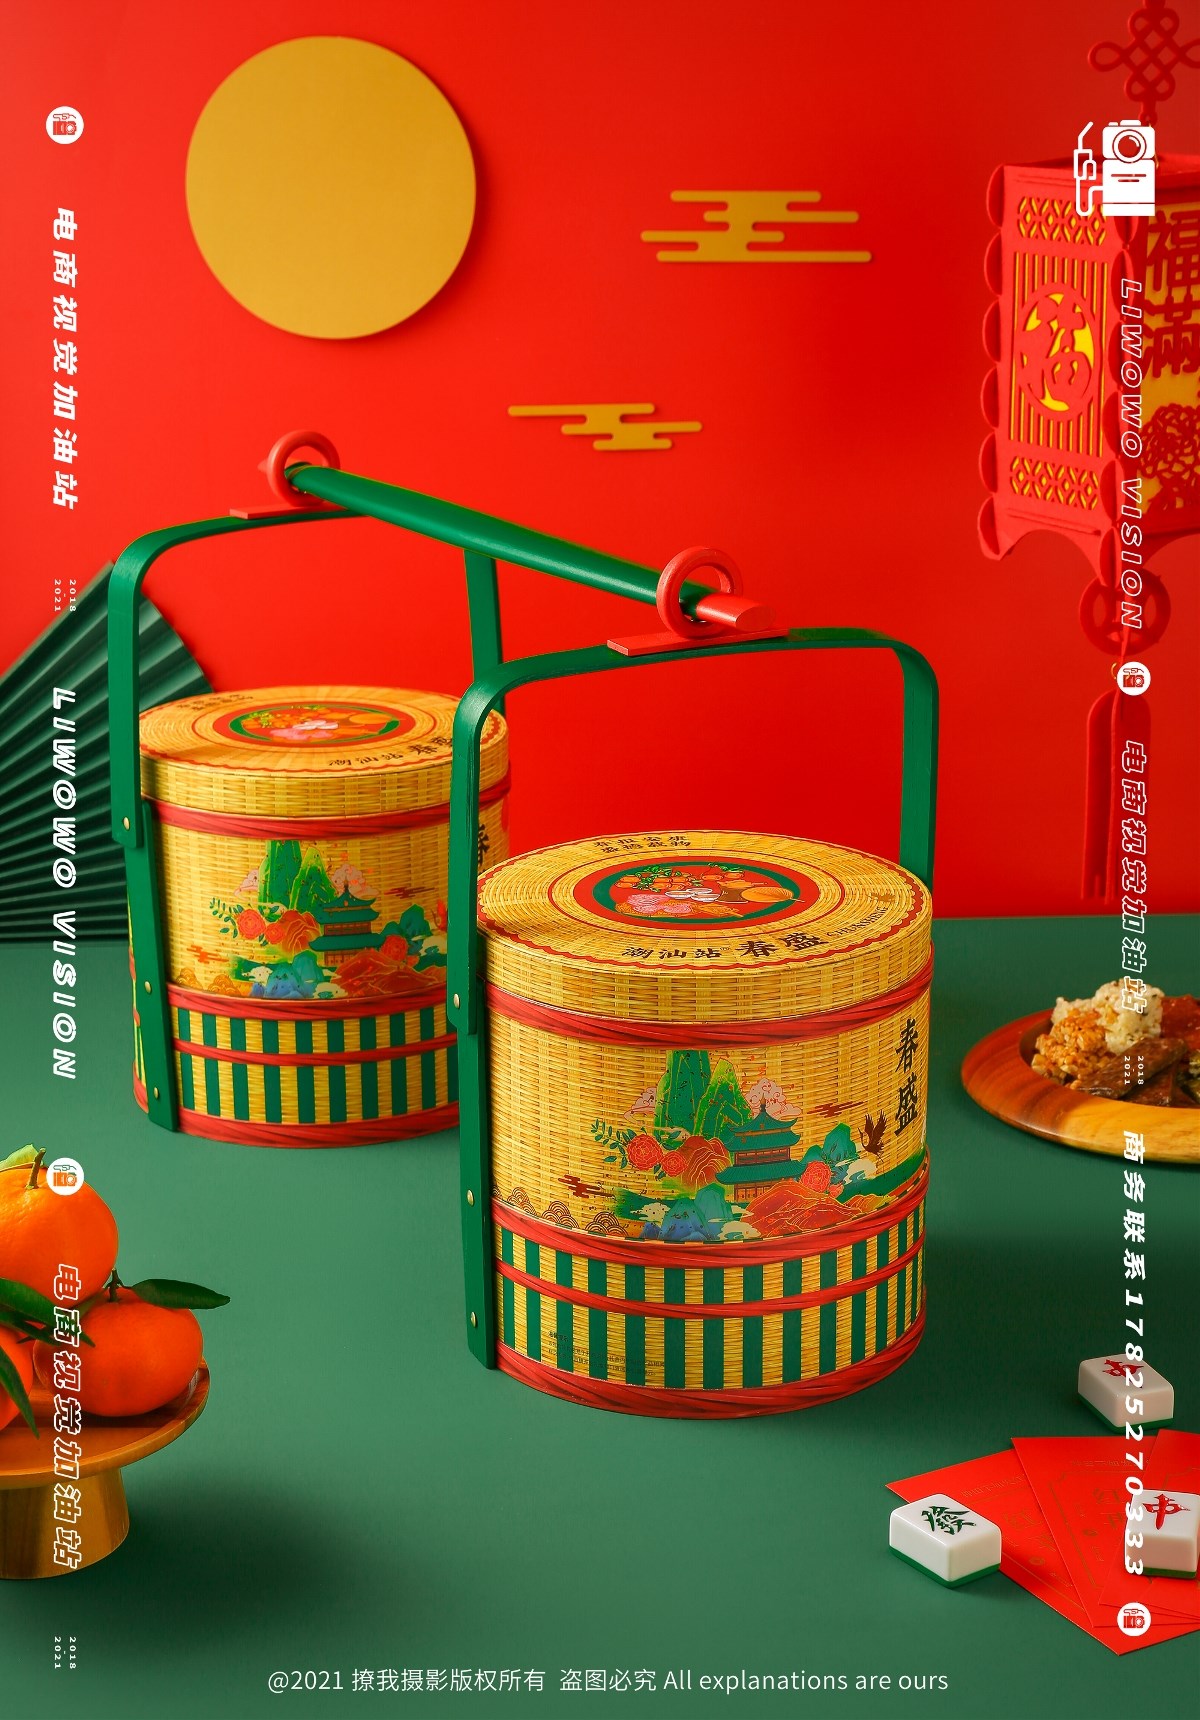 食品拍摄 | 潮汕站 x 春节礼盒系列 x LIAOWO VISION 